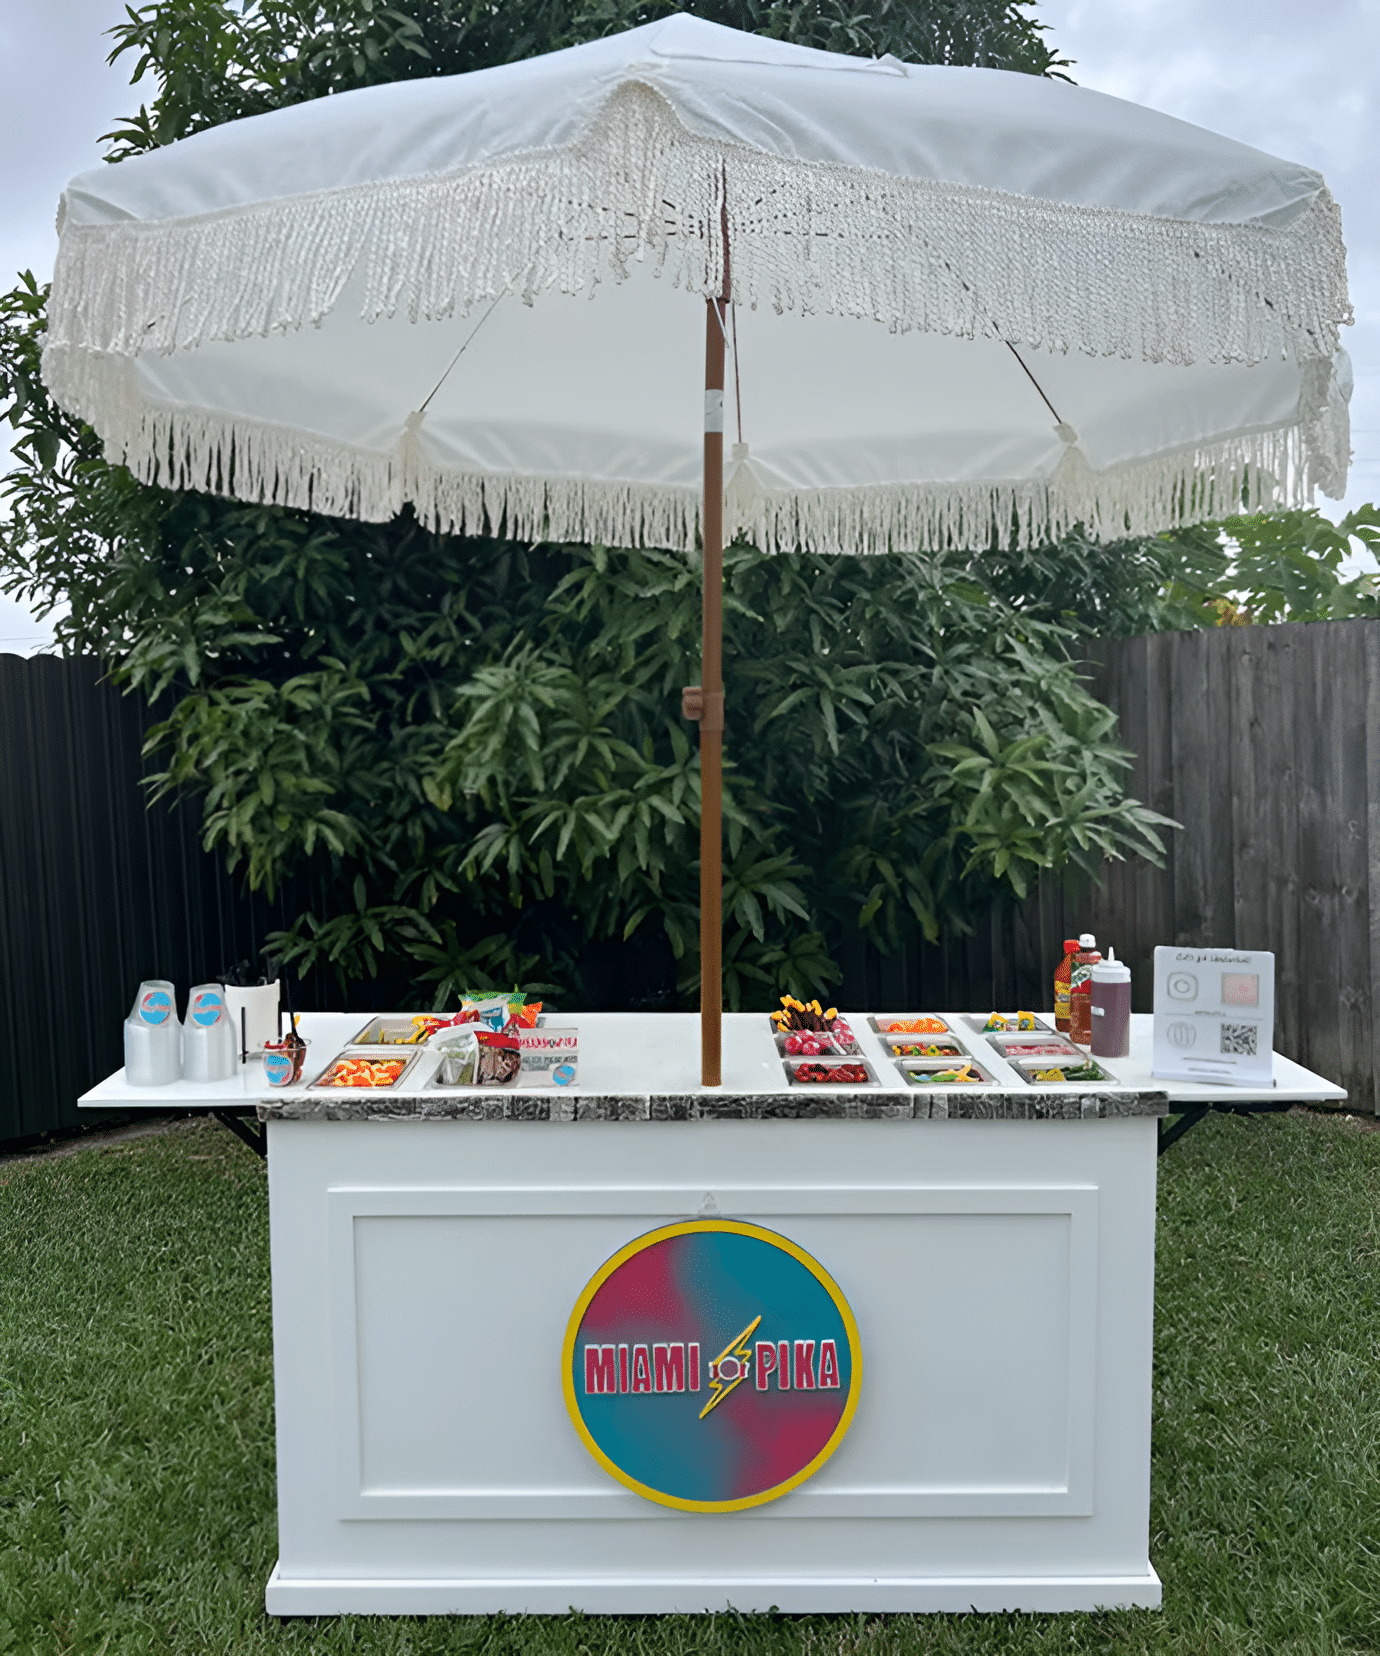 Miami Pika – The Premier Snack Event Cart Rental In Miami!